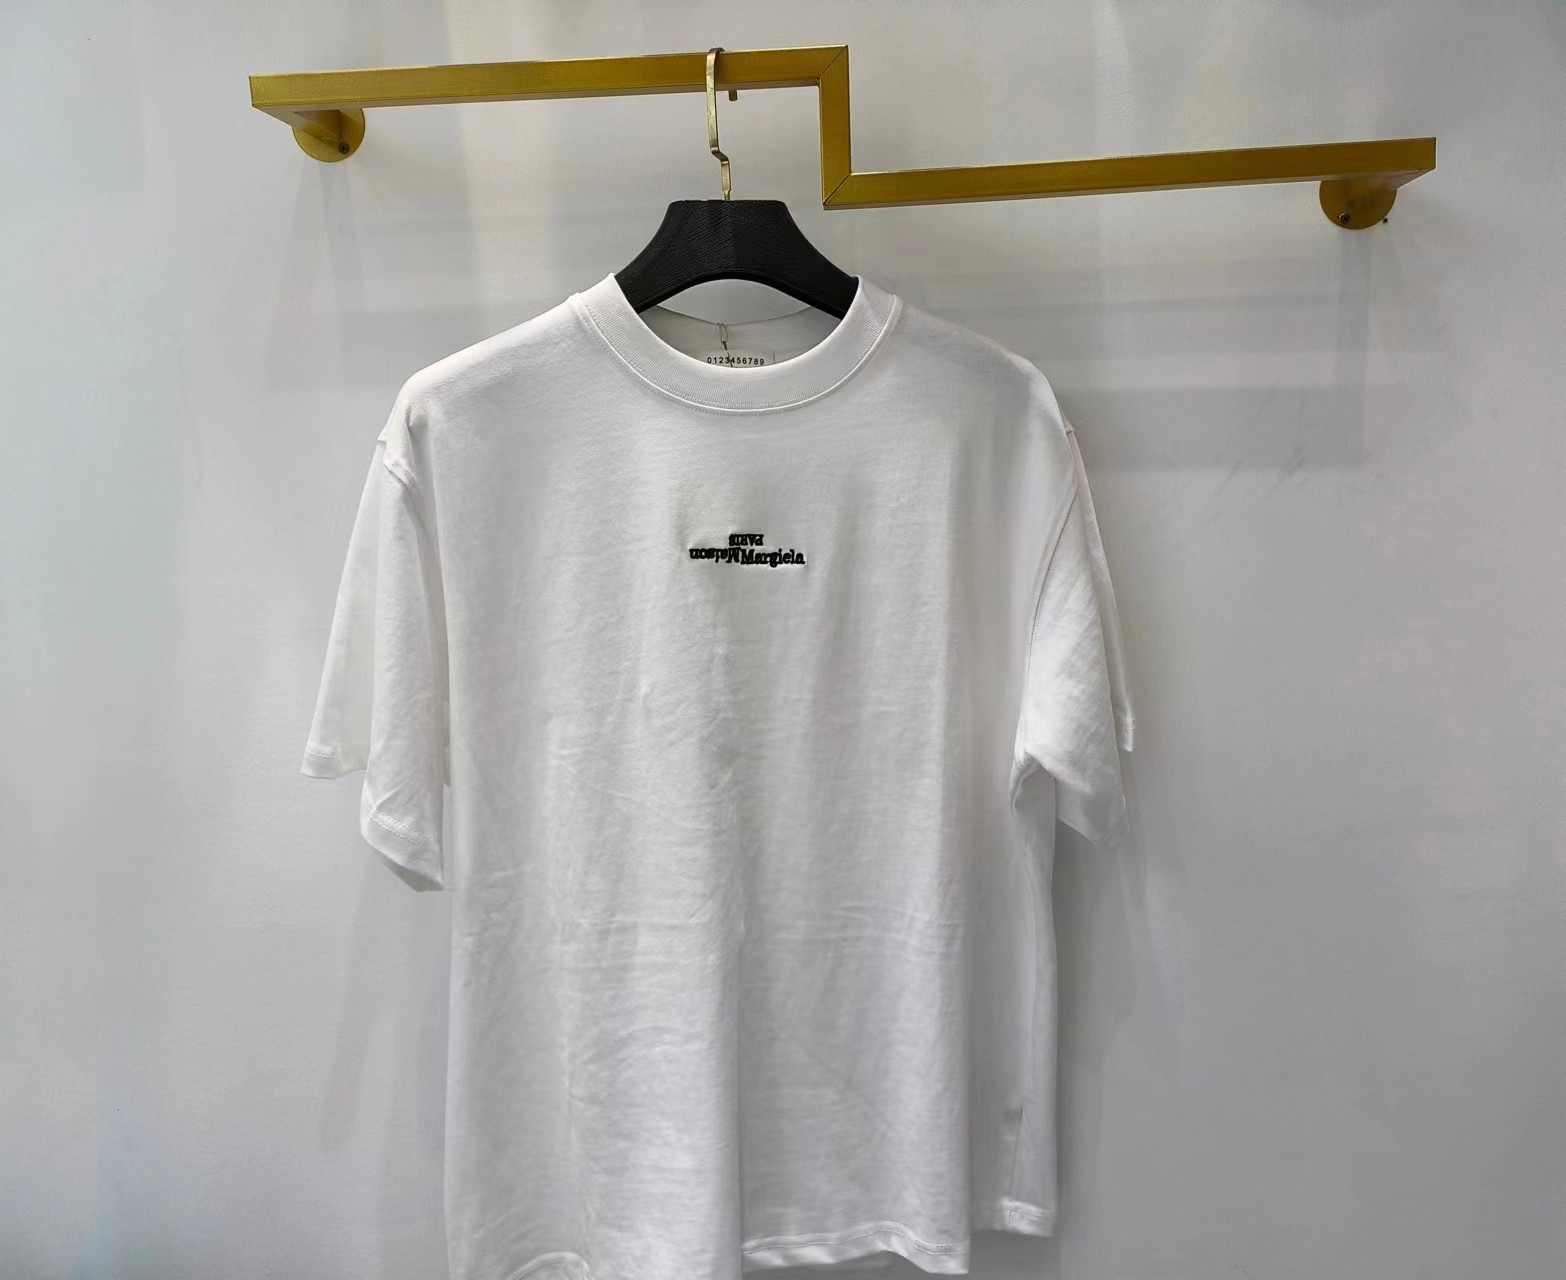 【激安】高級品通販 WE11DONE ウェルダン意味コピー トップス 純綿tシャツ 半袖 シンプル 2色可選_7